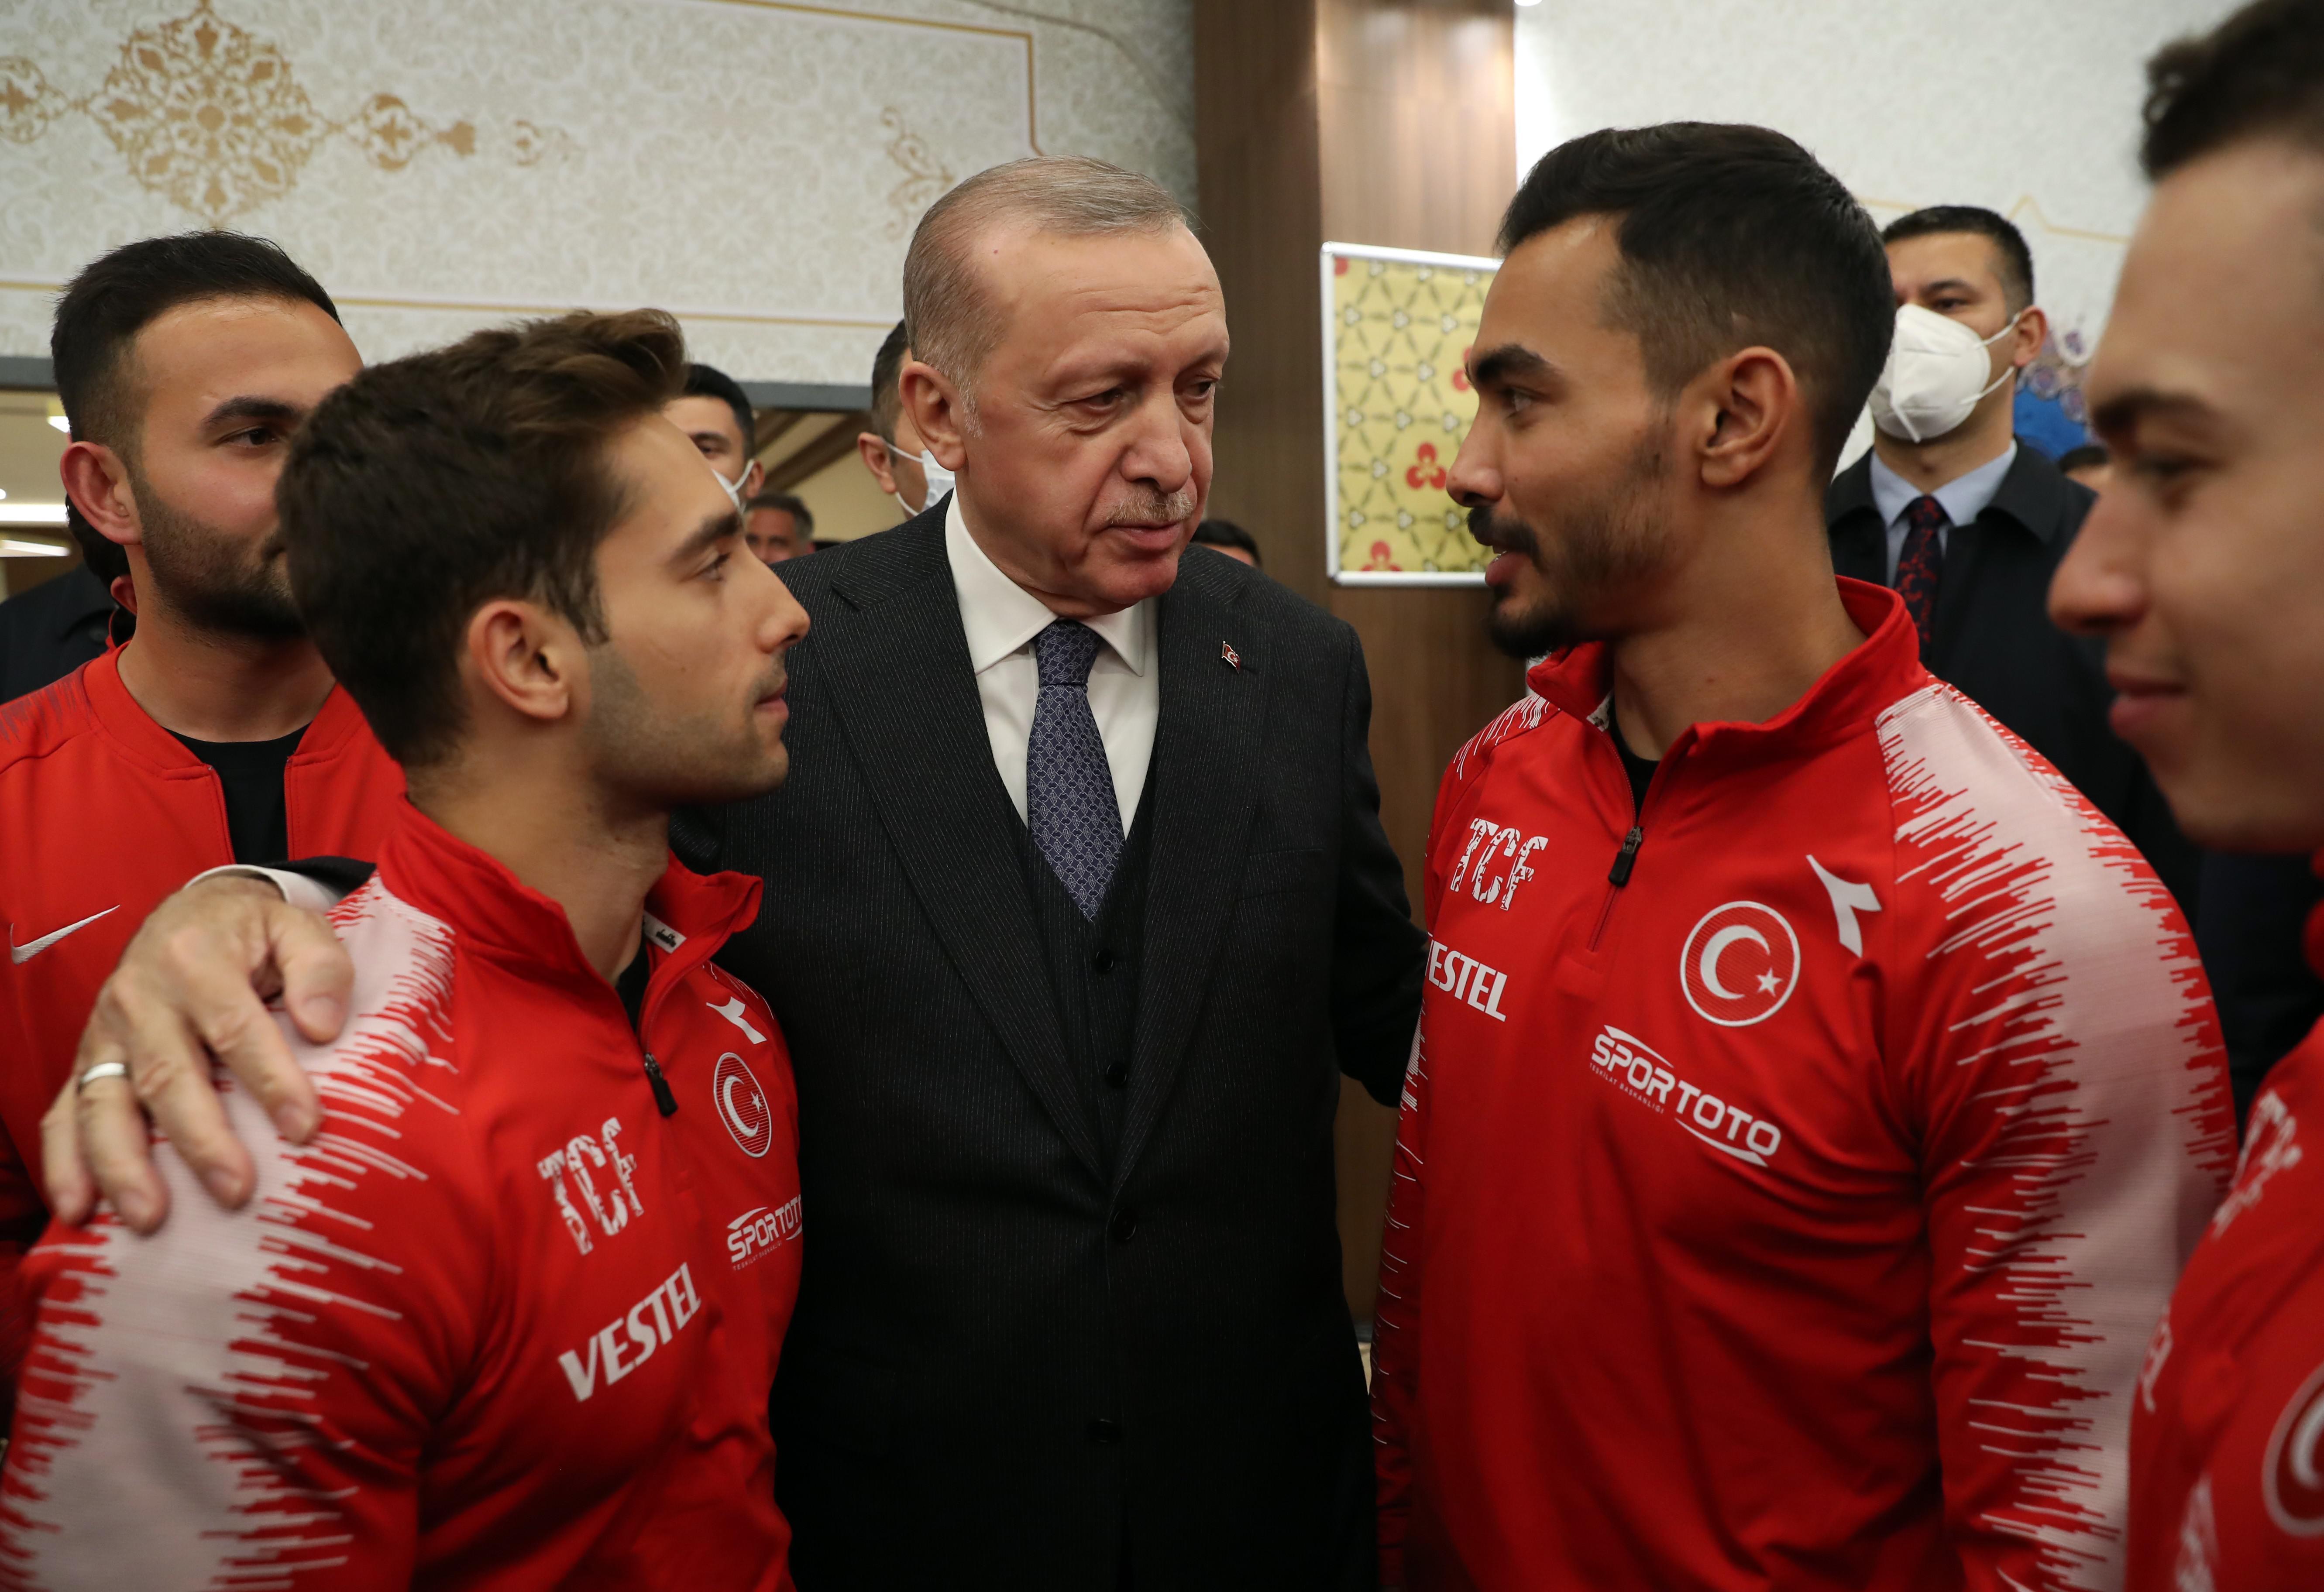 Cumhurbaşkanı Erdoğan: Türkiye, sporda başarılarla dolu bir gelecek vadediyor